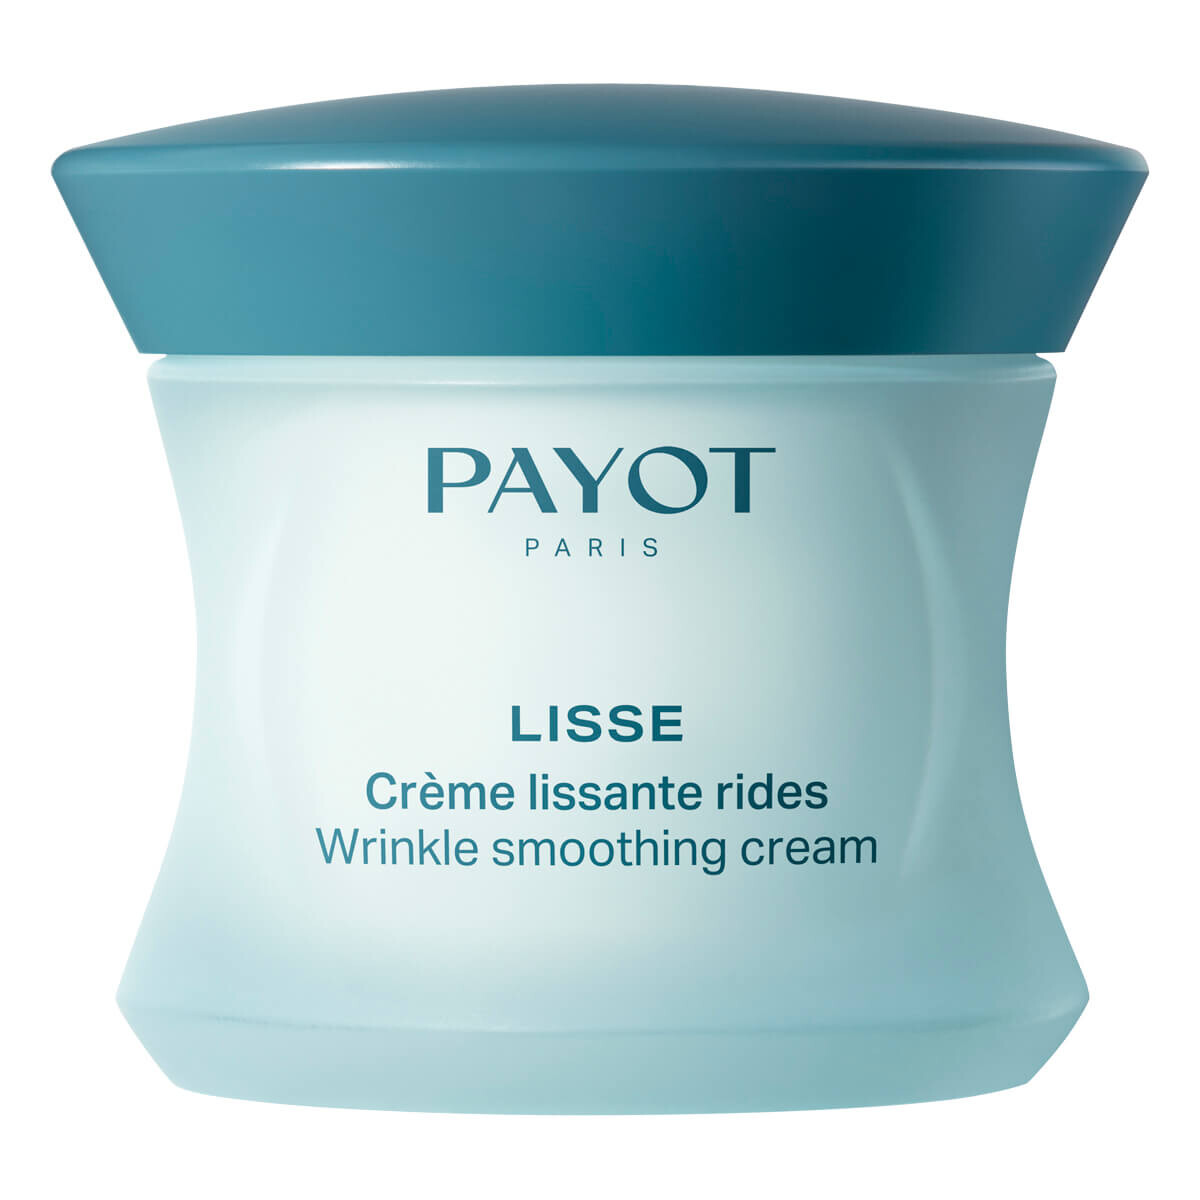 Se Payot Wrinkle Smoothing Cream, Lisse, 50 ml. hos Proshave